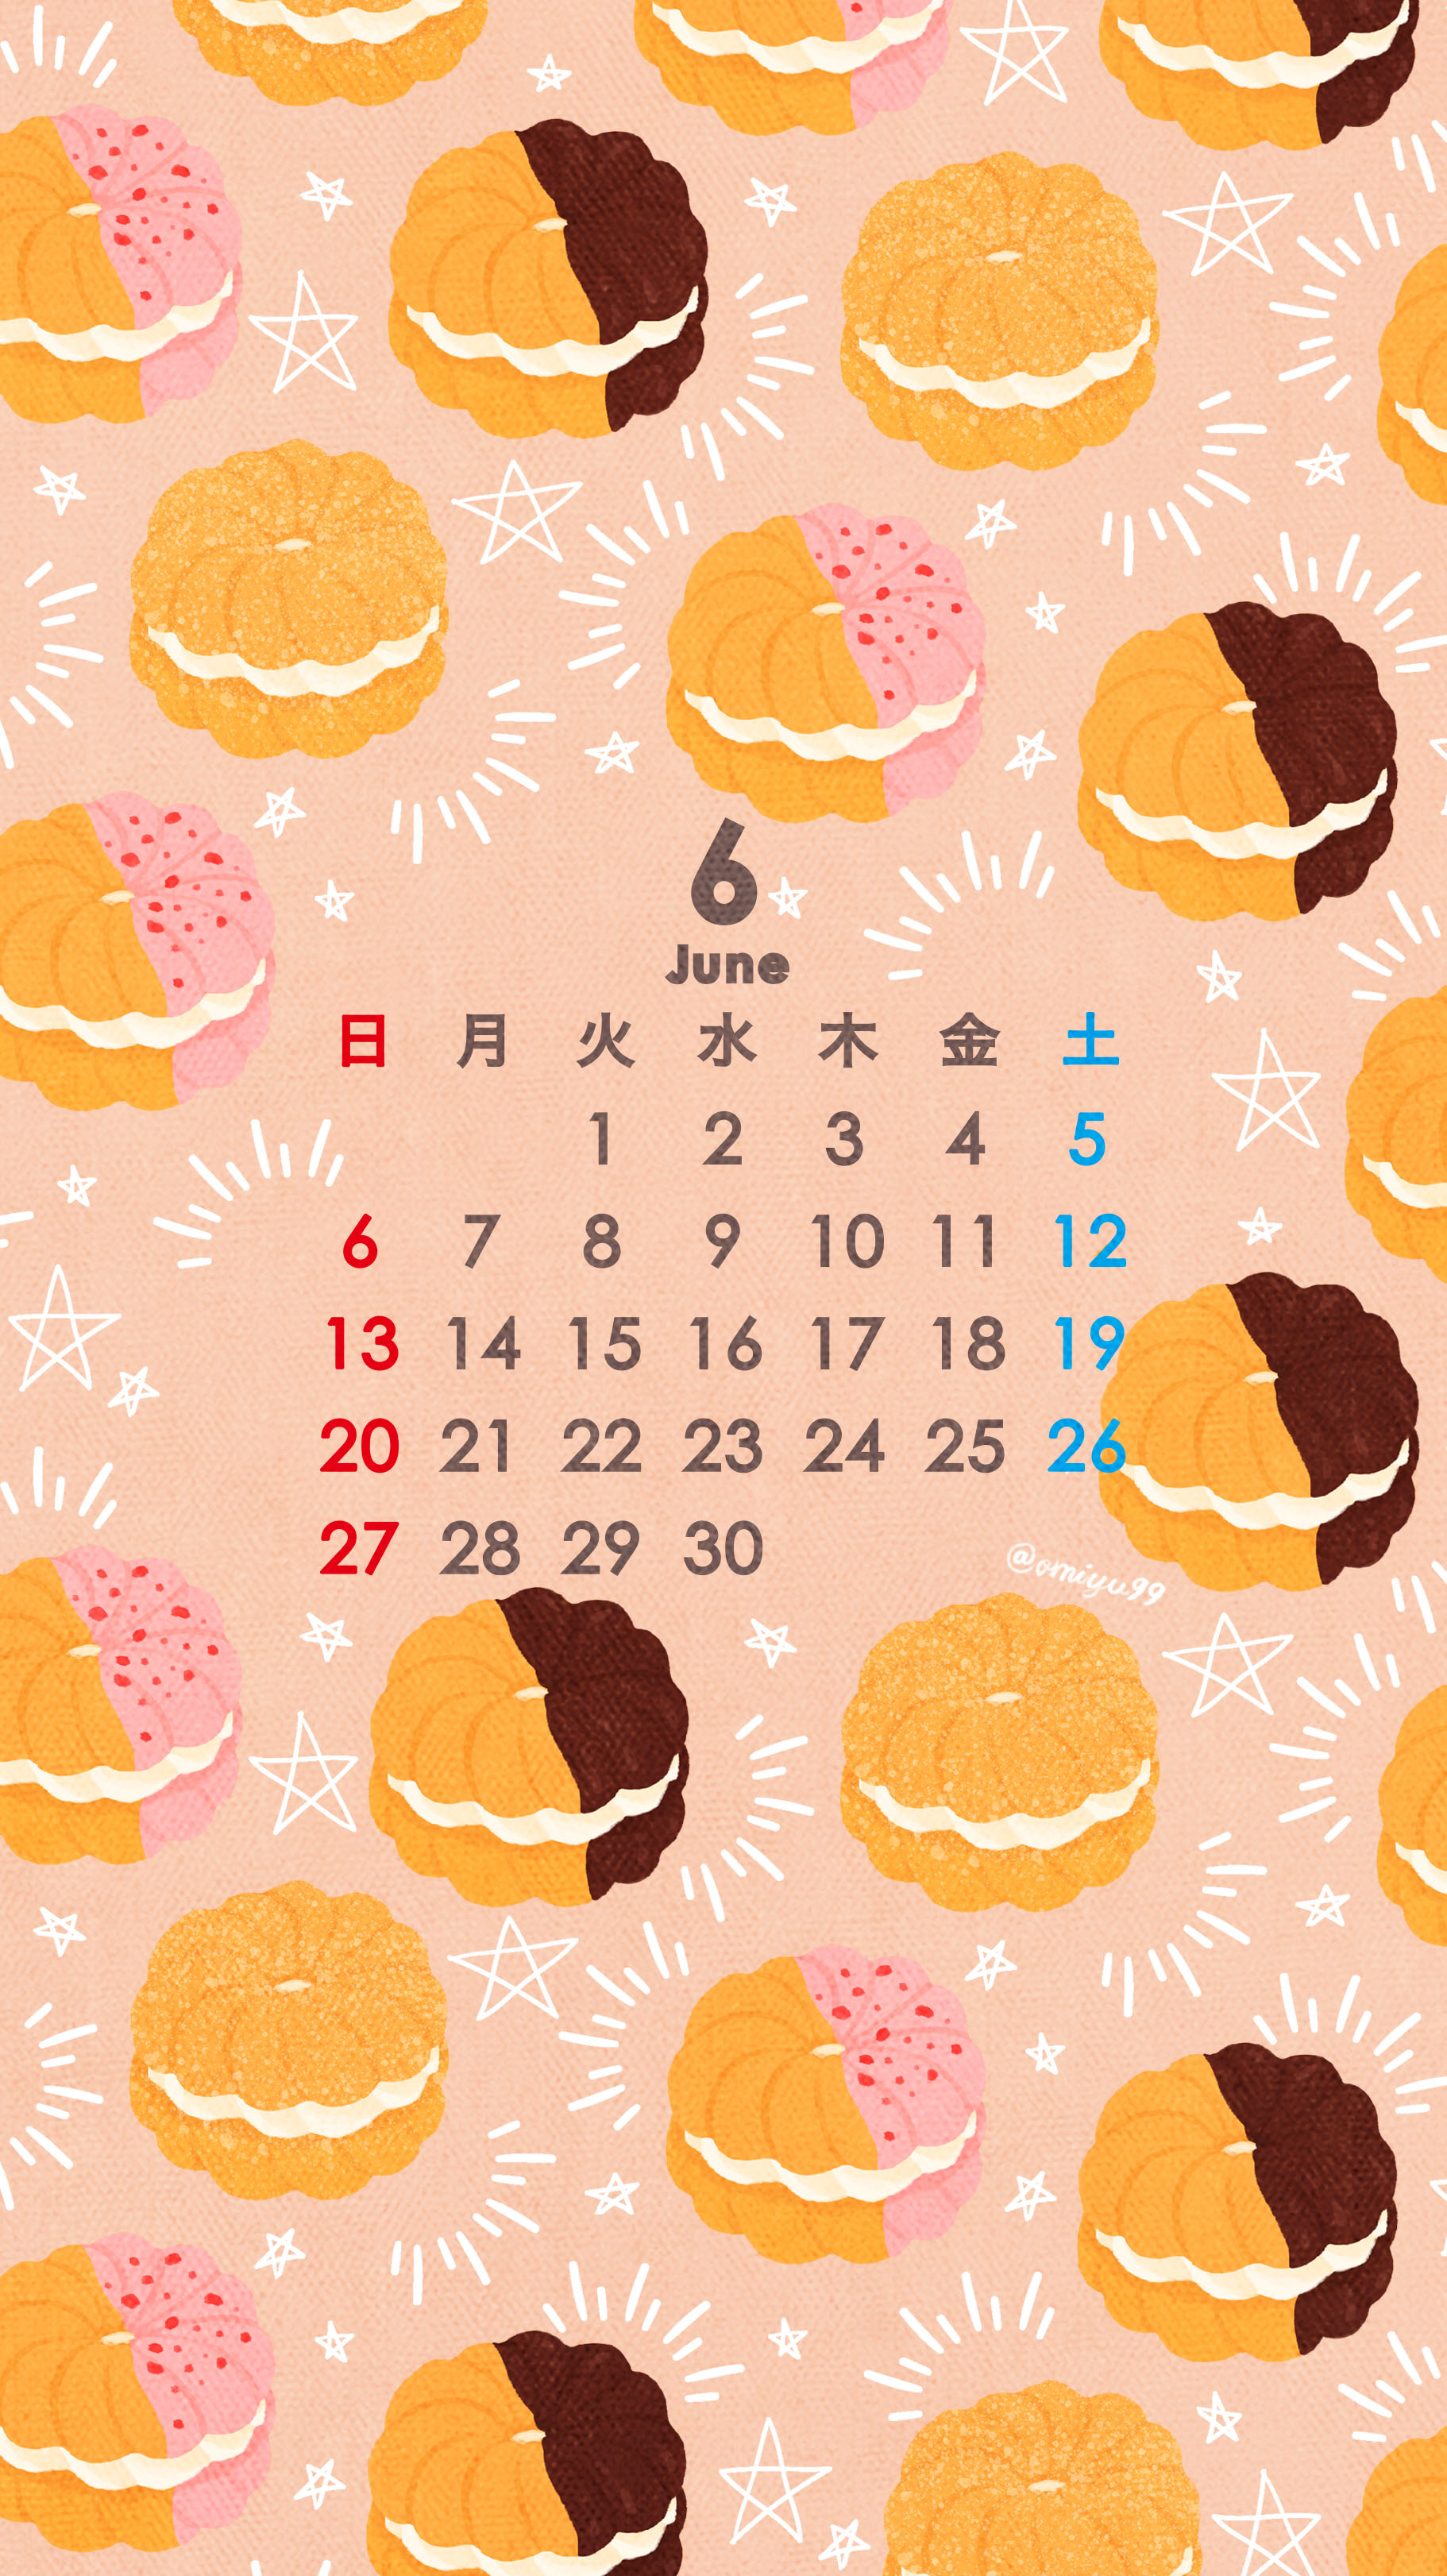 Twitter 上的 Omiyu フレンチクルーラーな壁紙カレンダー 21年6月 Illust Illustration 壁紙 イラスト Iphone壁紙 ドーナツ Donuts フレンチクルーラー Frenchcruller 食べ物 カレンダー リクエストありがとうございます T Co Zocdfprox0